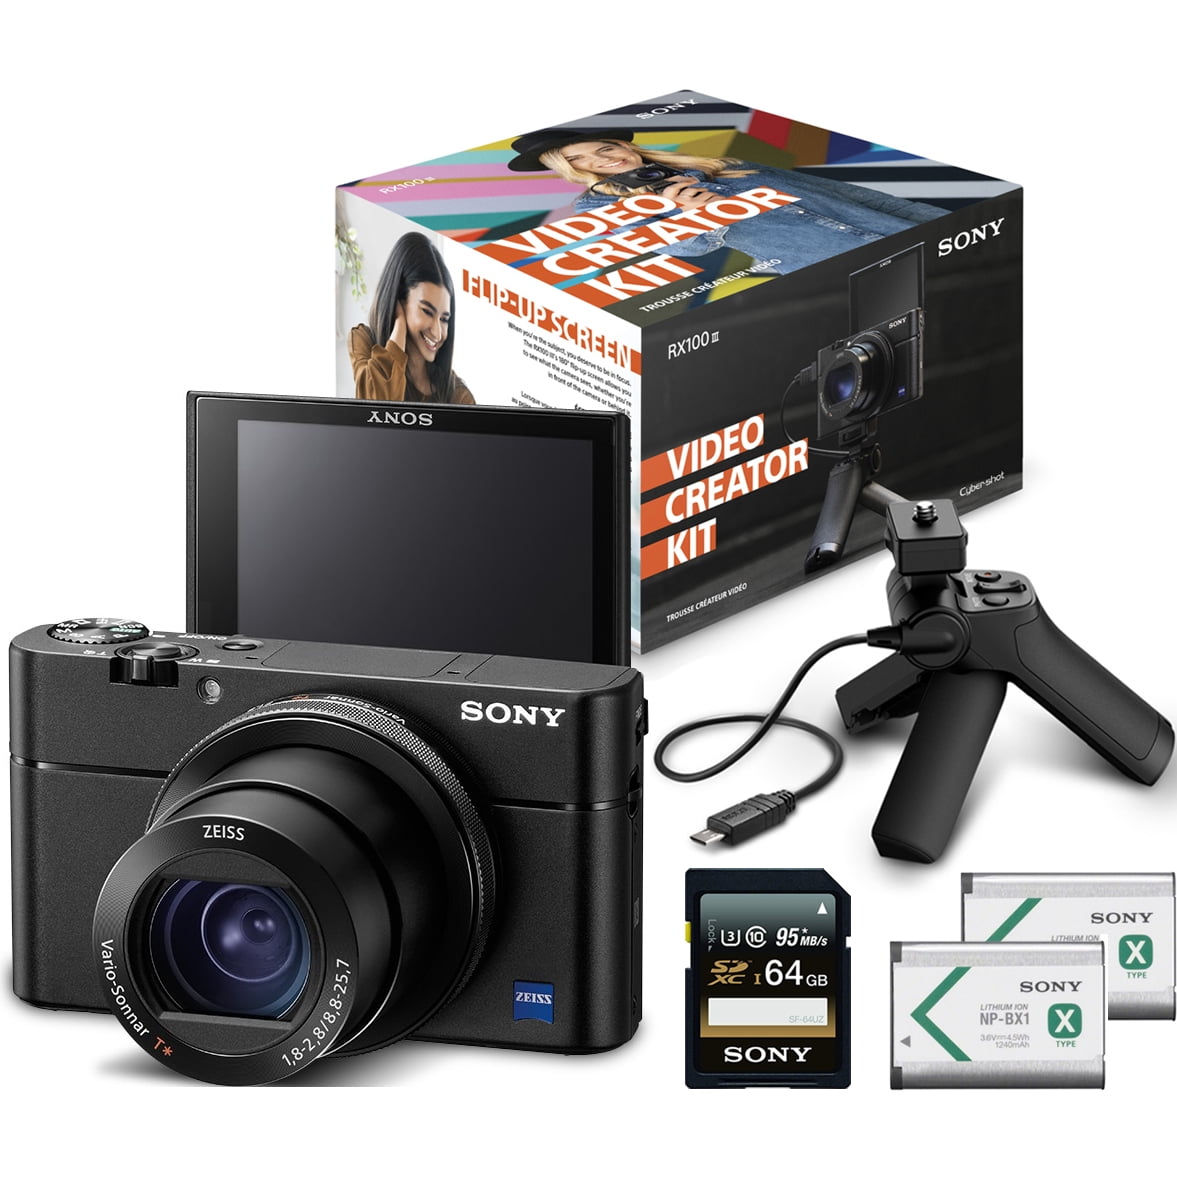 Sony Cyber Shot Dsc Rx100 Iii Digital Camera Video Creator Kit Dsc Rx100m3kit Walmart Com Walmart Com